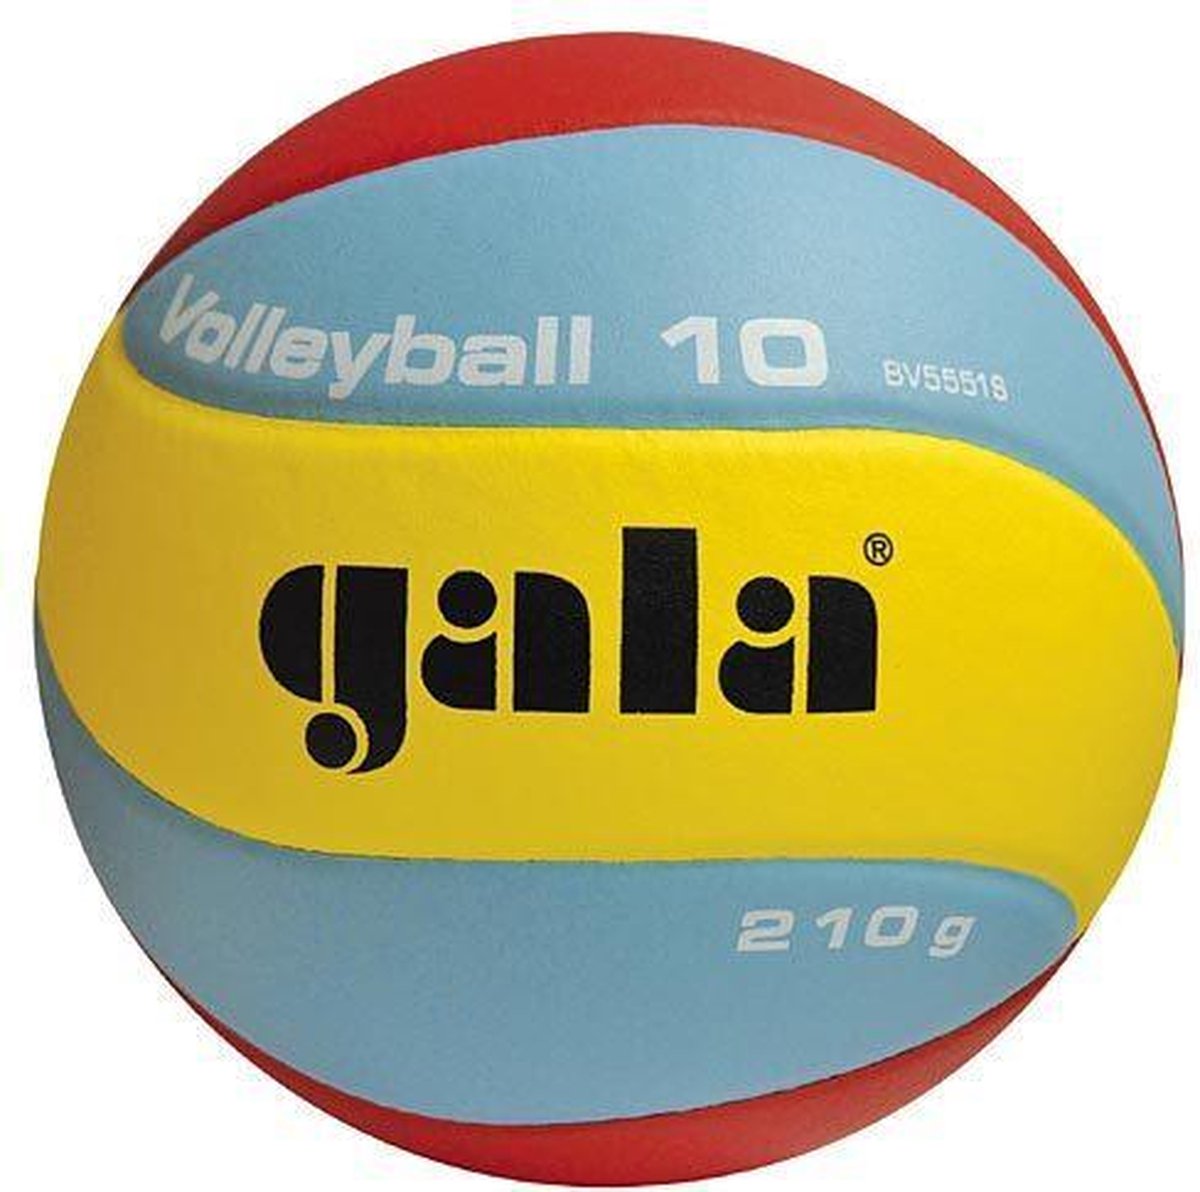 Gala Volleybal Jeugd V180 BV 5541S Indoor | bol.com